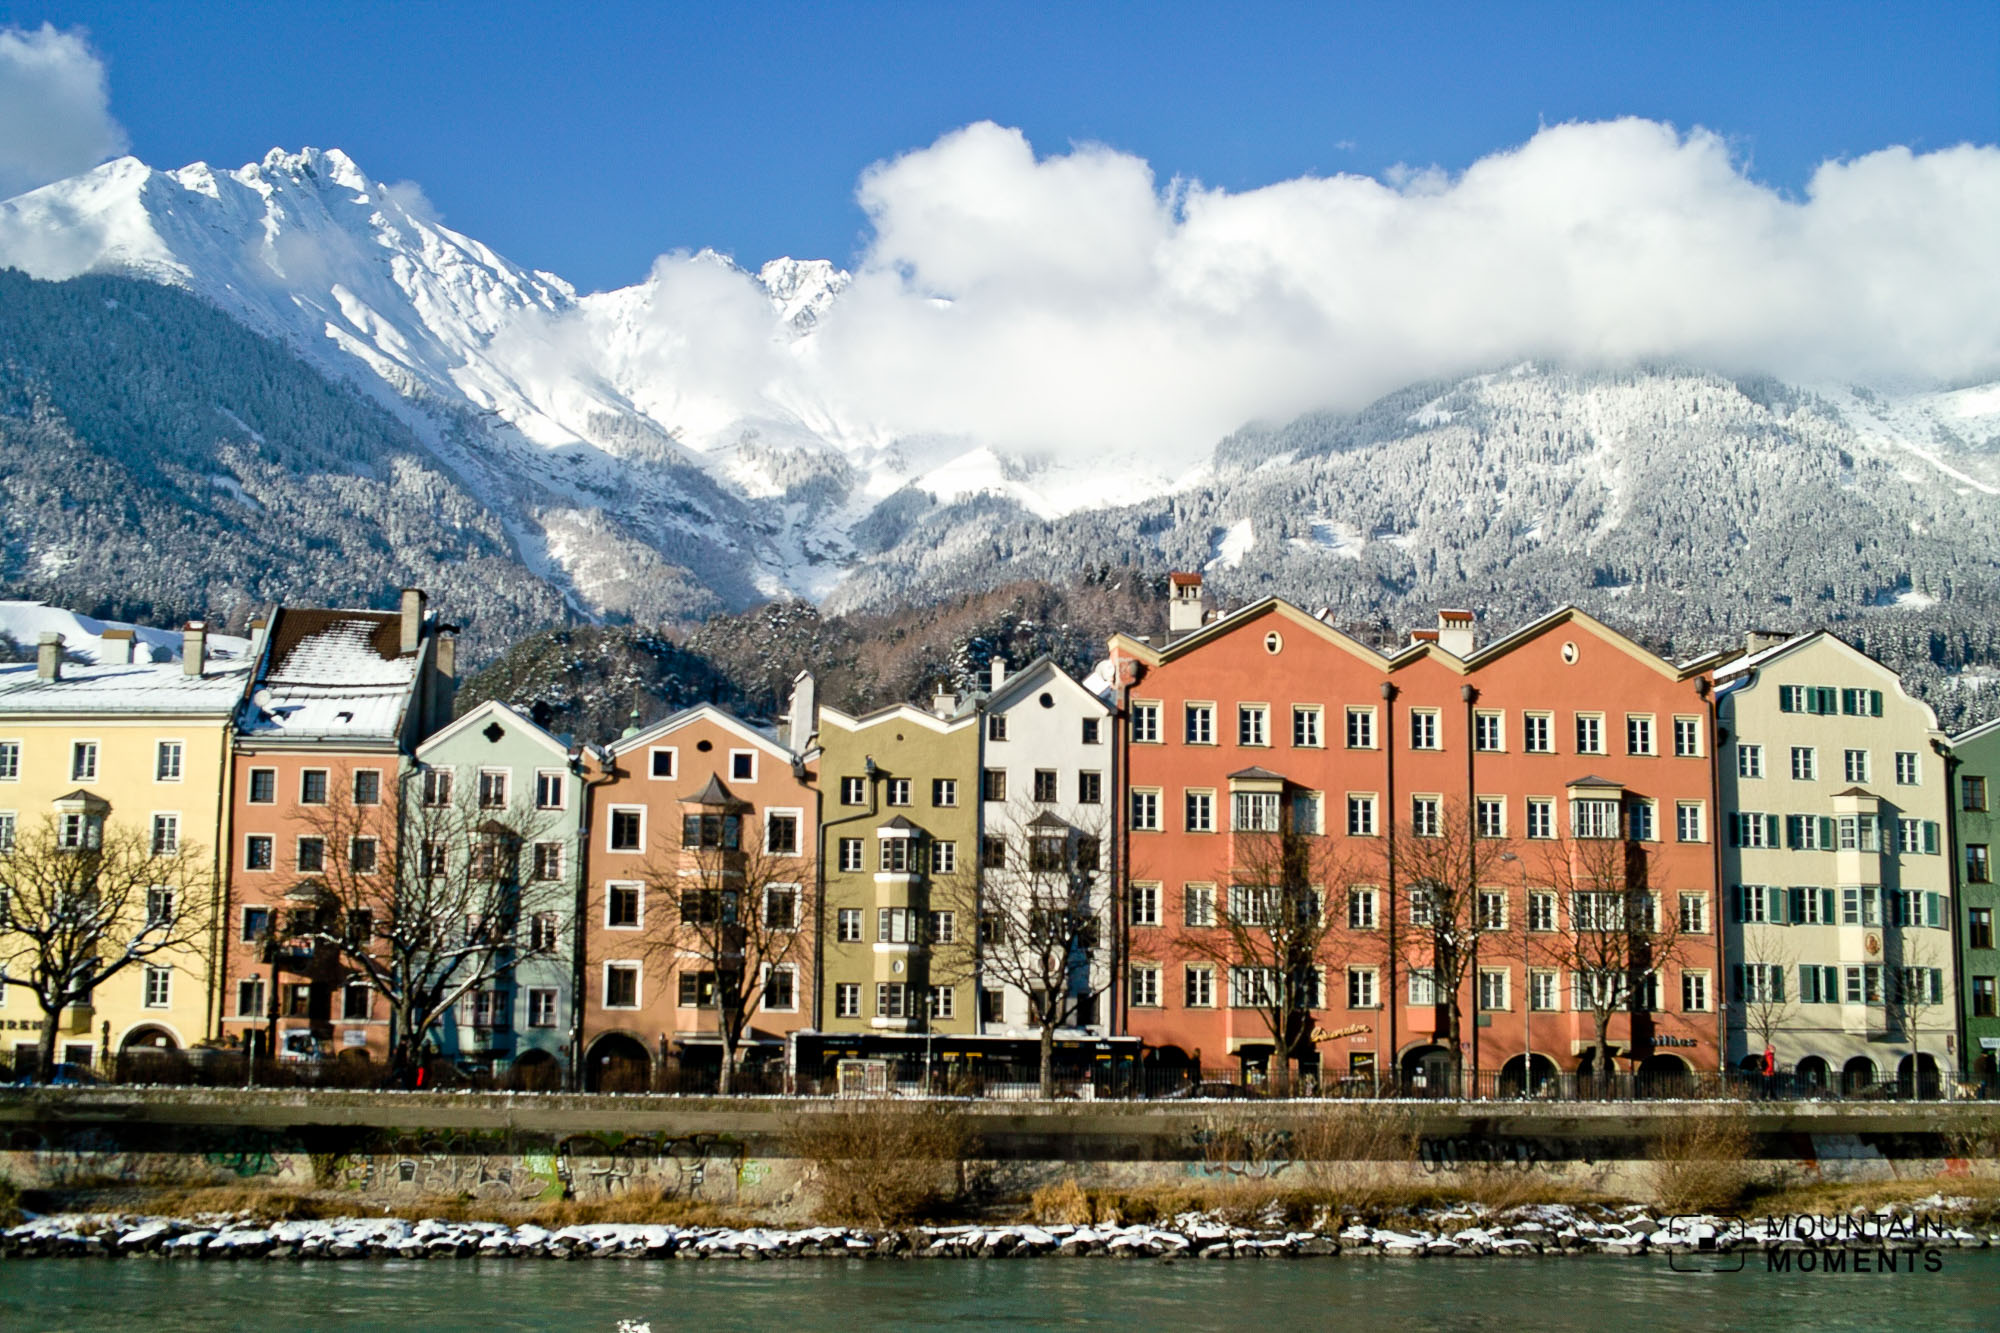 Winterurlaub in Innsbruck: Die 5 schönsten Aktivitäten für einen perfekten Kurztrip (Tipps vom Local!)